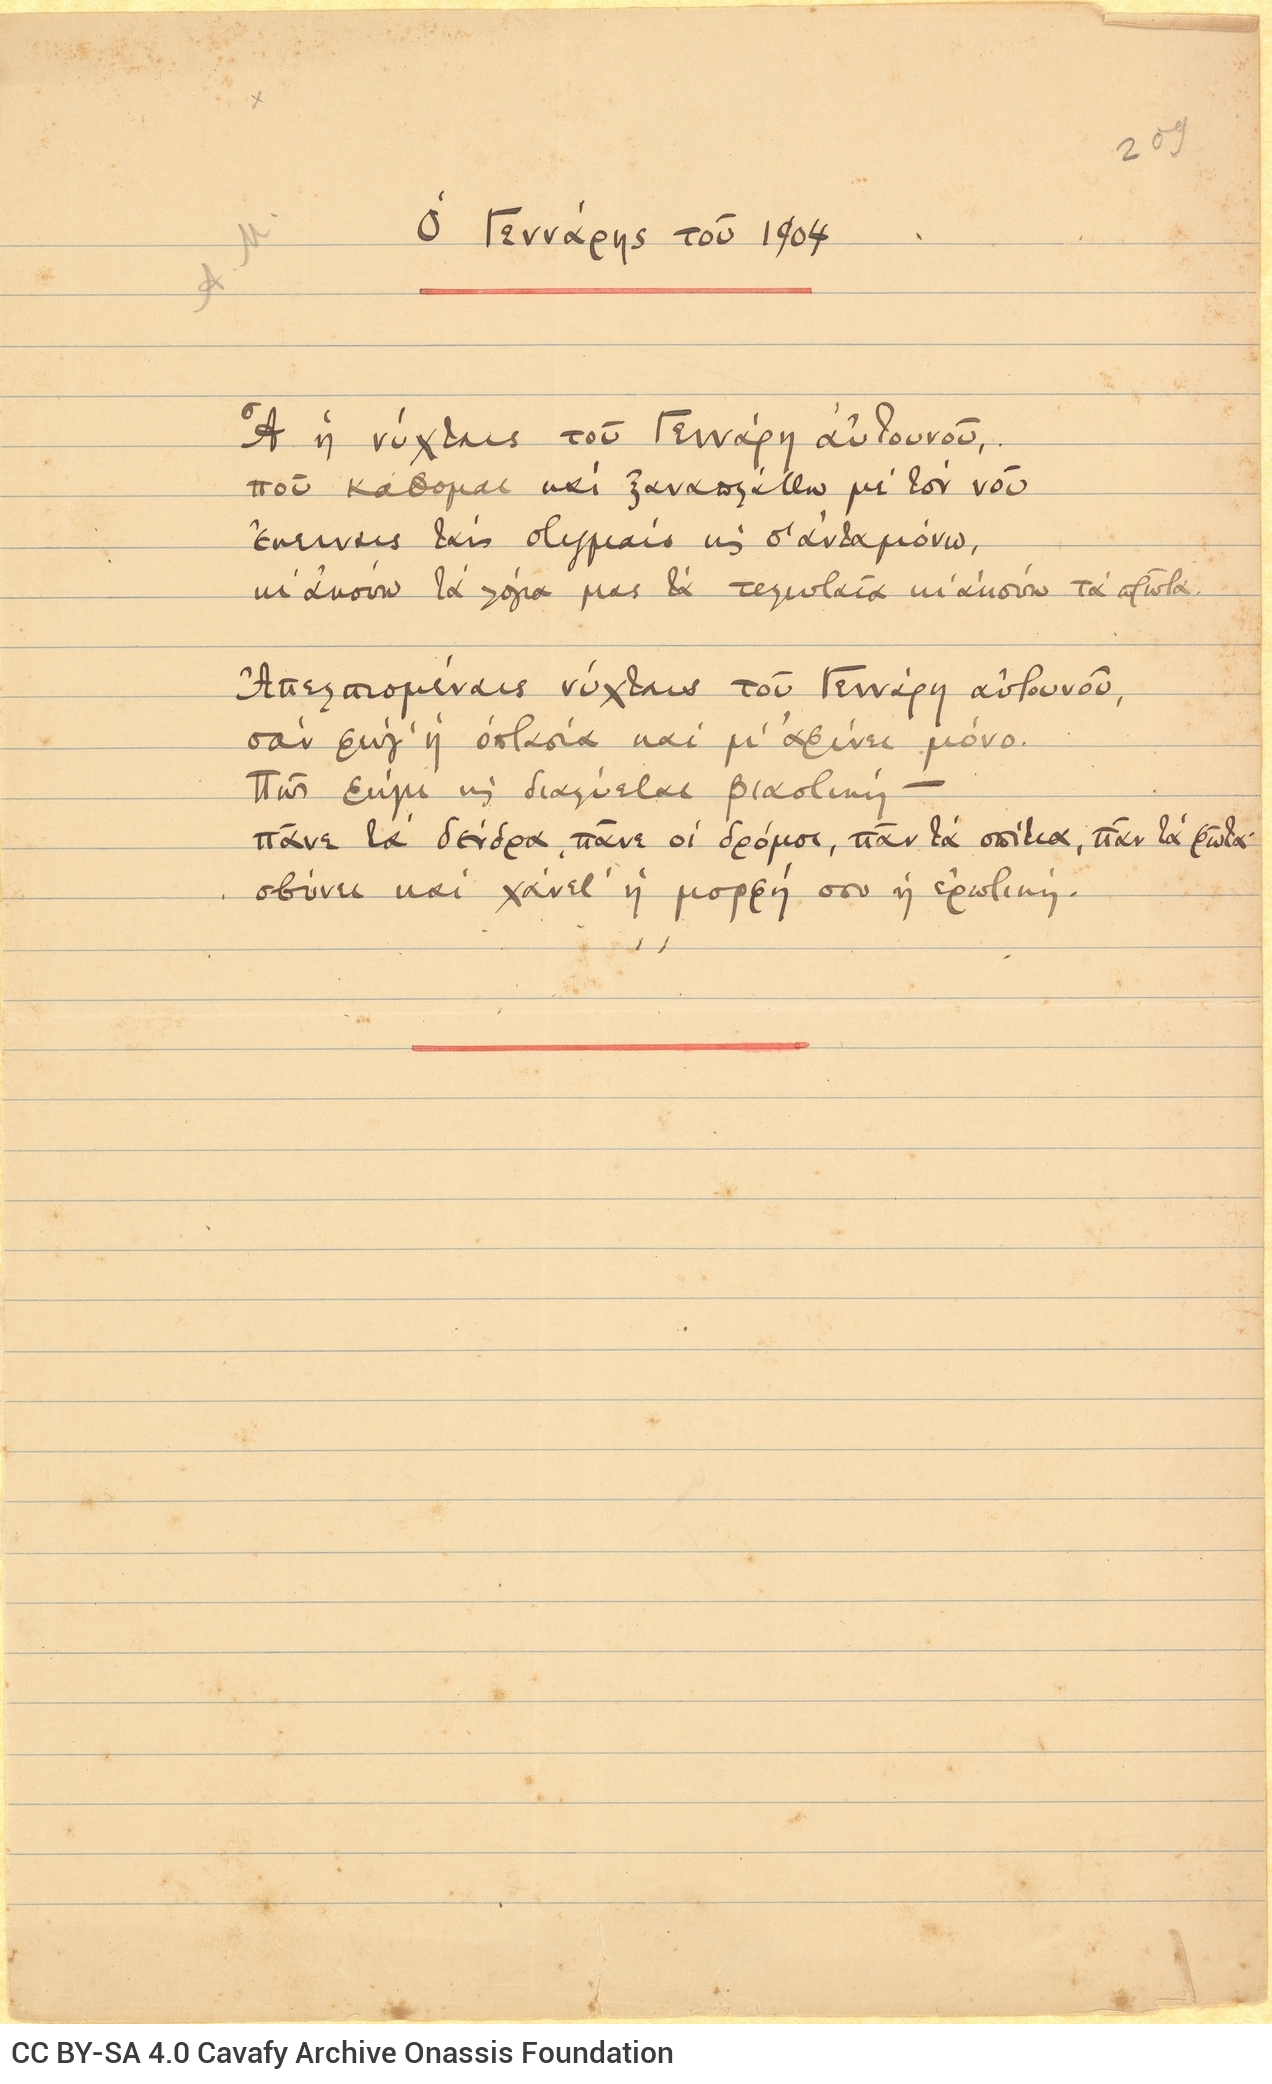 Χειρόγραφο του ποιήματος «Ο Γεννάρης του 1904». Υπογράμμιση του τίτλ